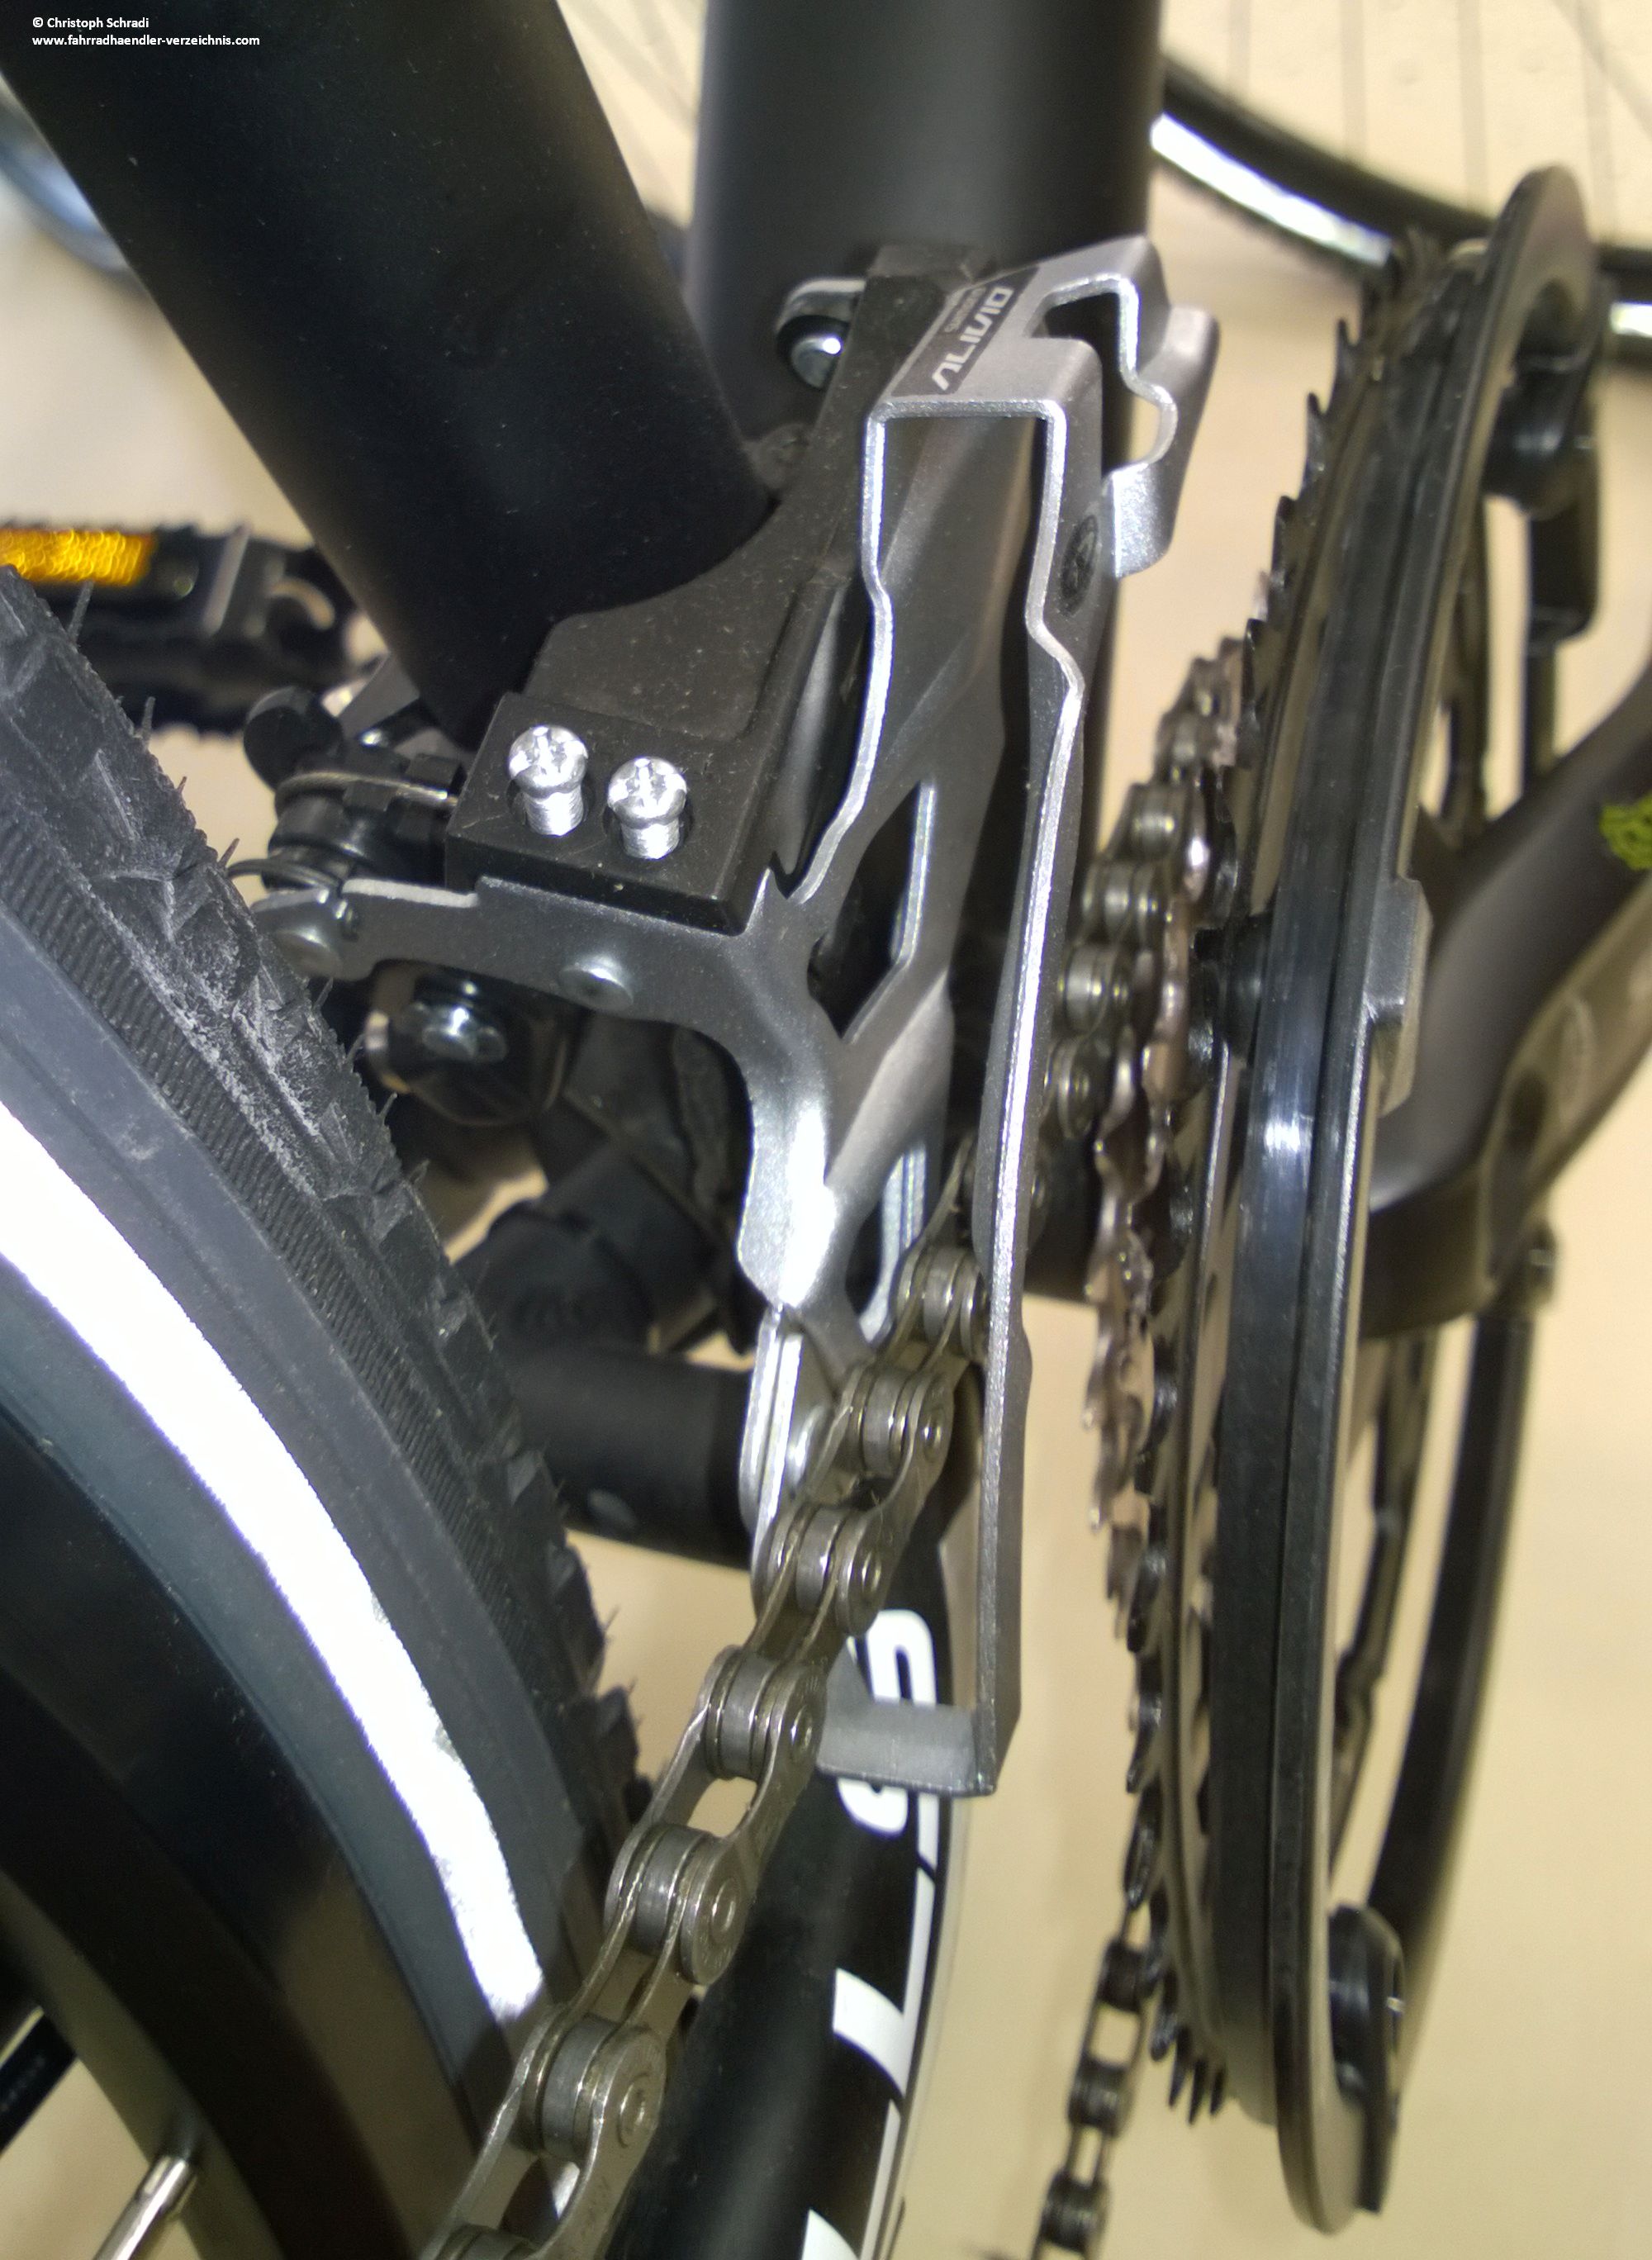 Bei sehr großen Kettenblättern und kräftigen Fahrrädern kommt es vor allem bei älteren Rädern gerne zum Schleifen der Kette am Umwerferblech